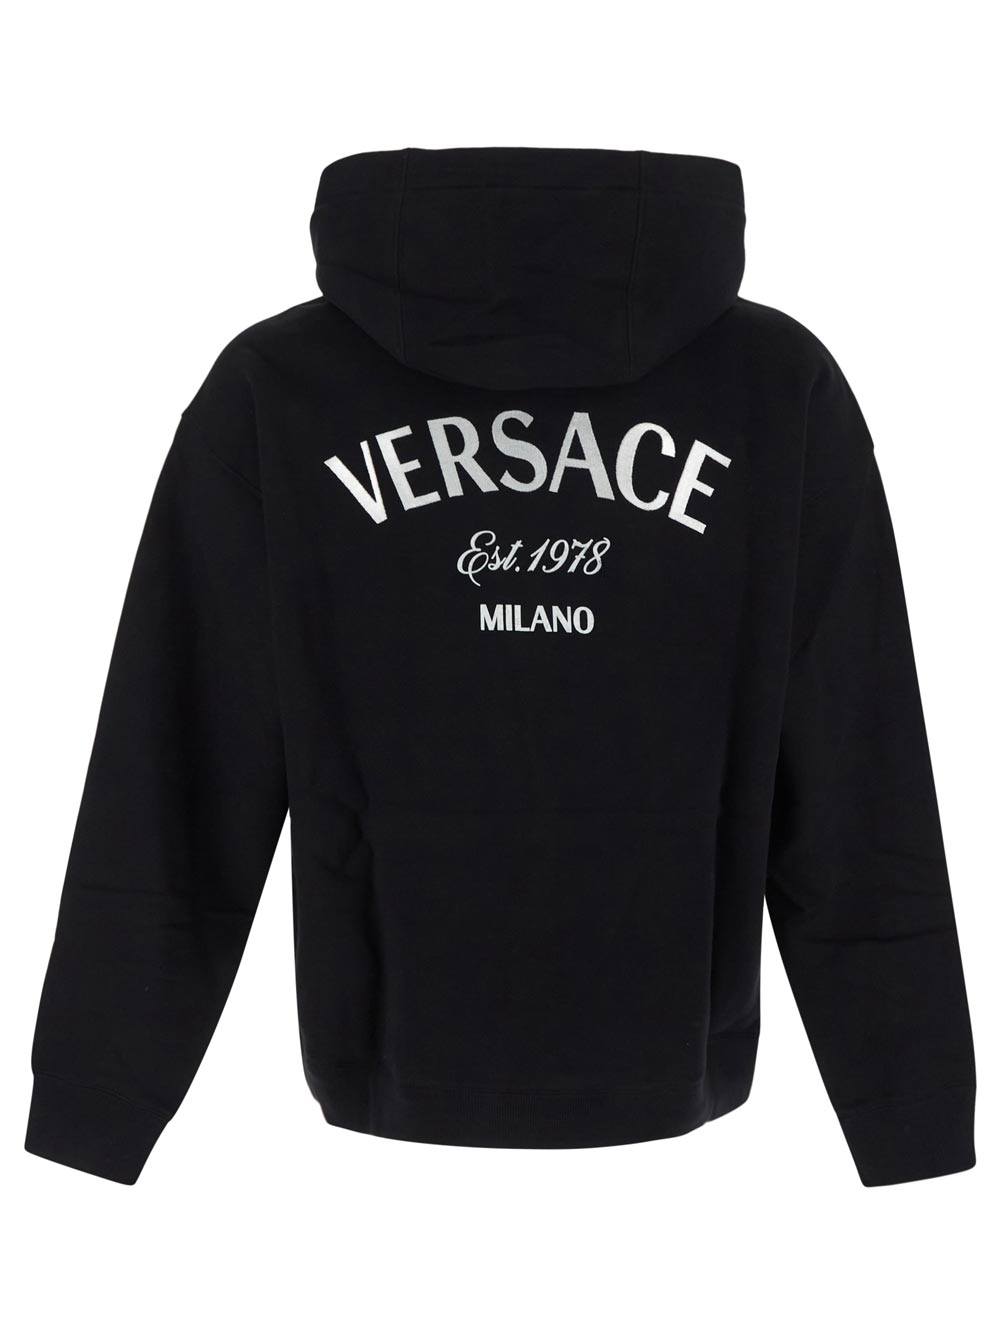 Versace Milano Stamp Hoodie